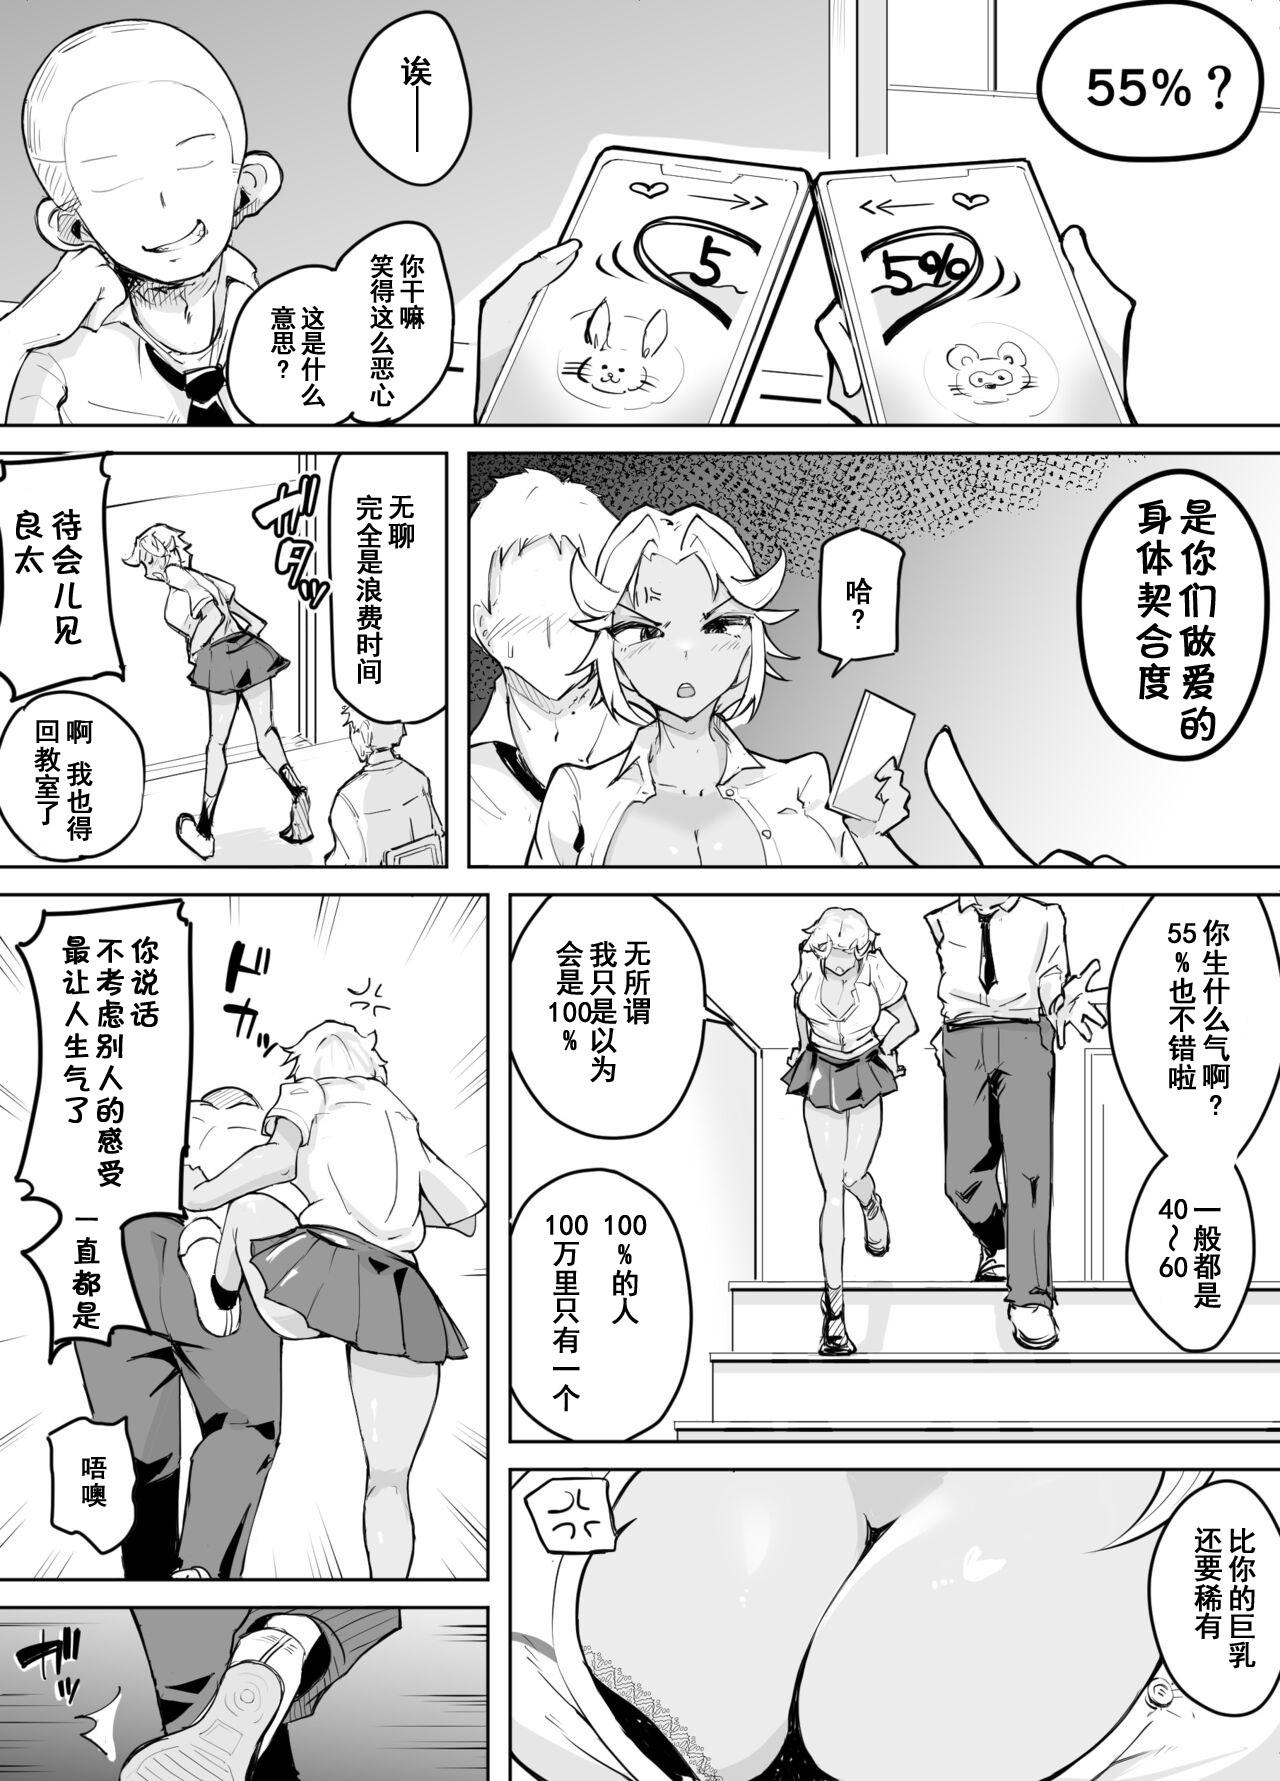 Pervert Kare yori Ii Hito ga Aishou Appli de Mitsukatte... - Original Wanking - Page 6